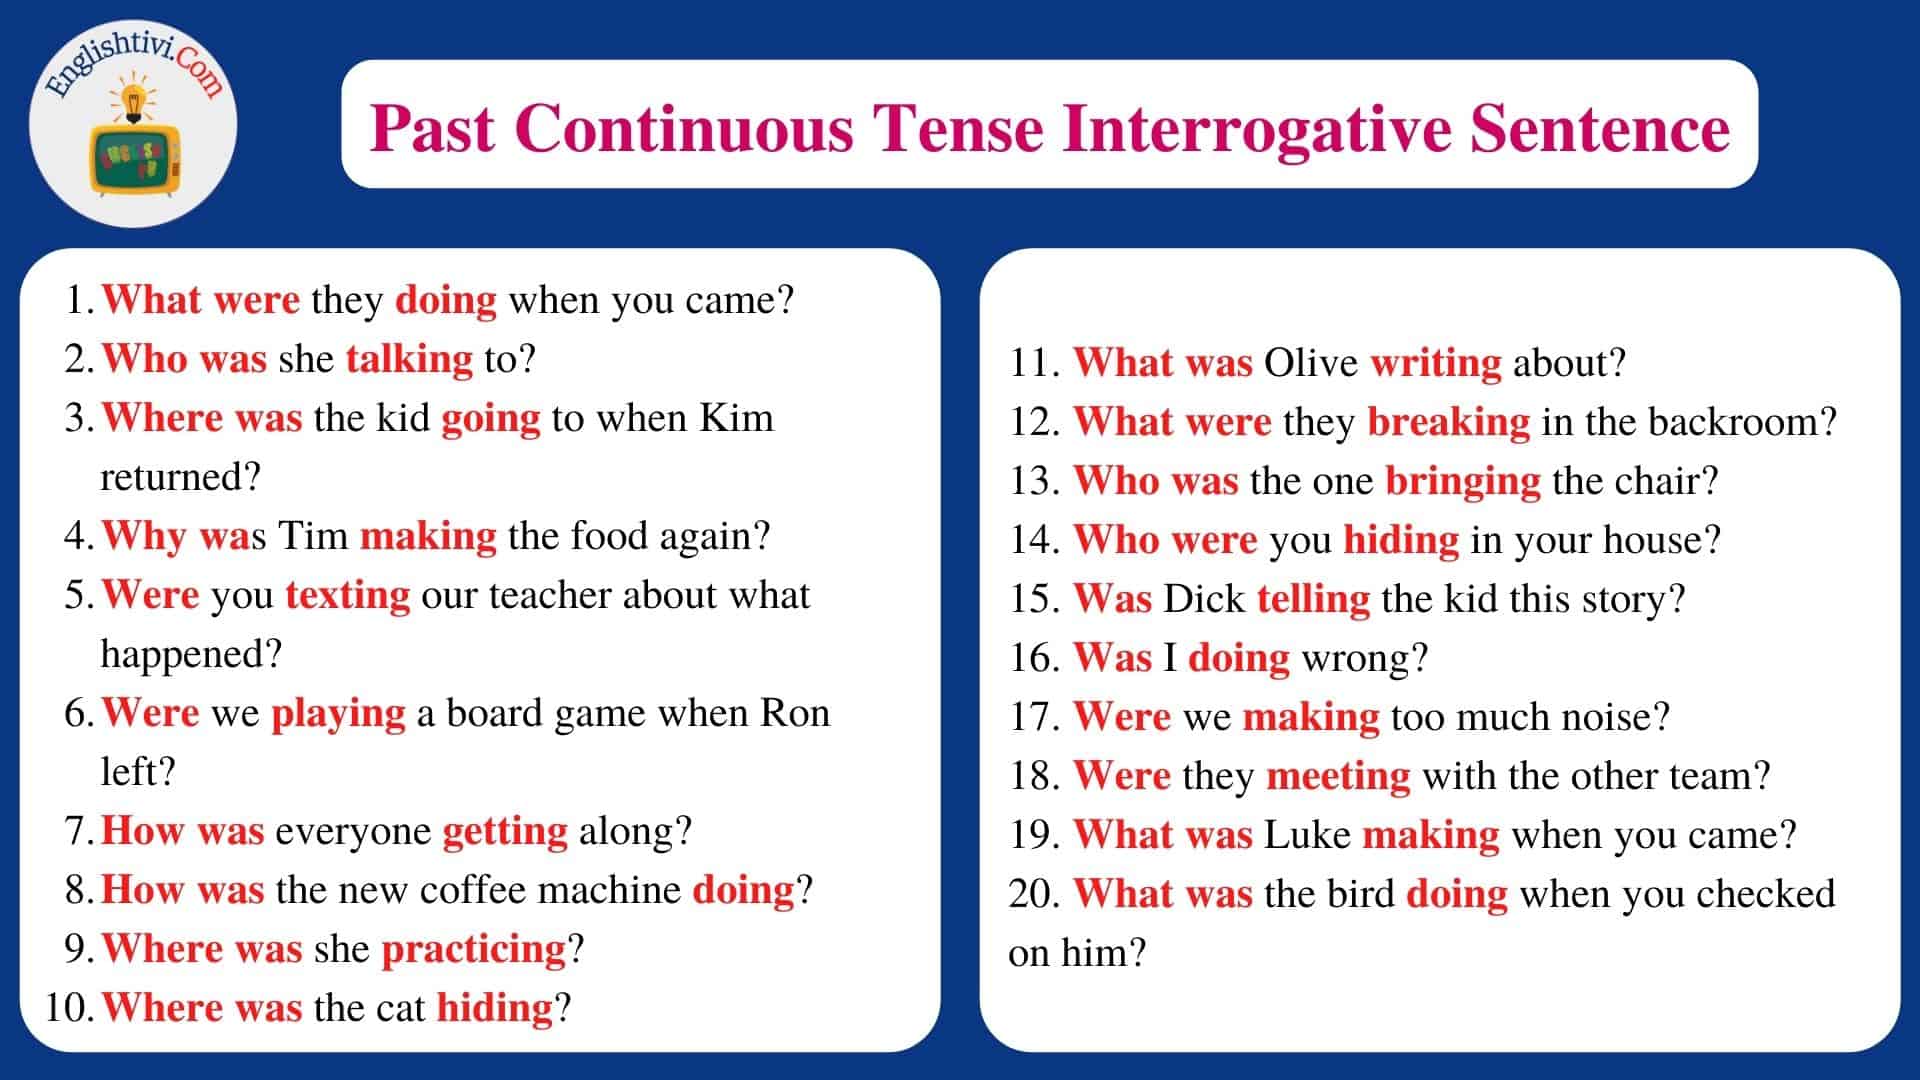 Past Continuous Tense Interrogative Sentence